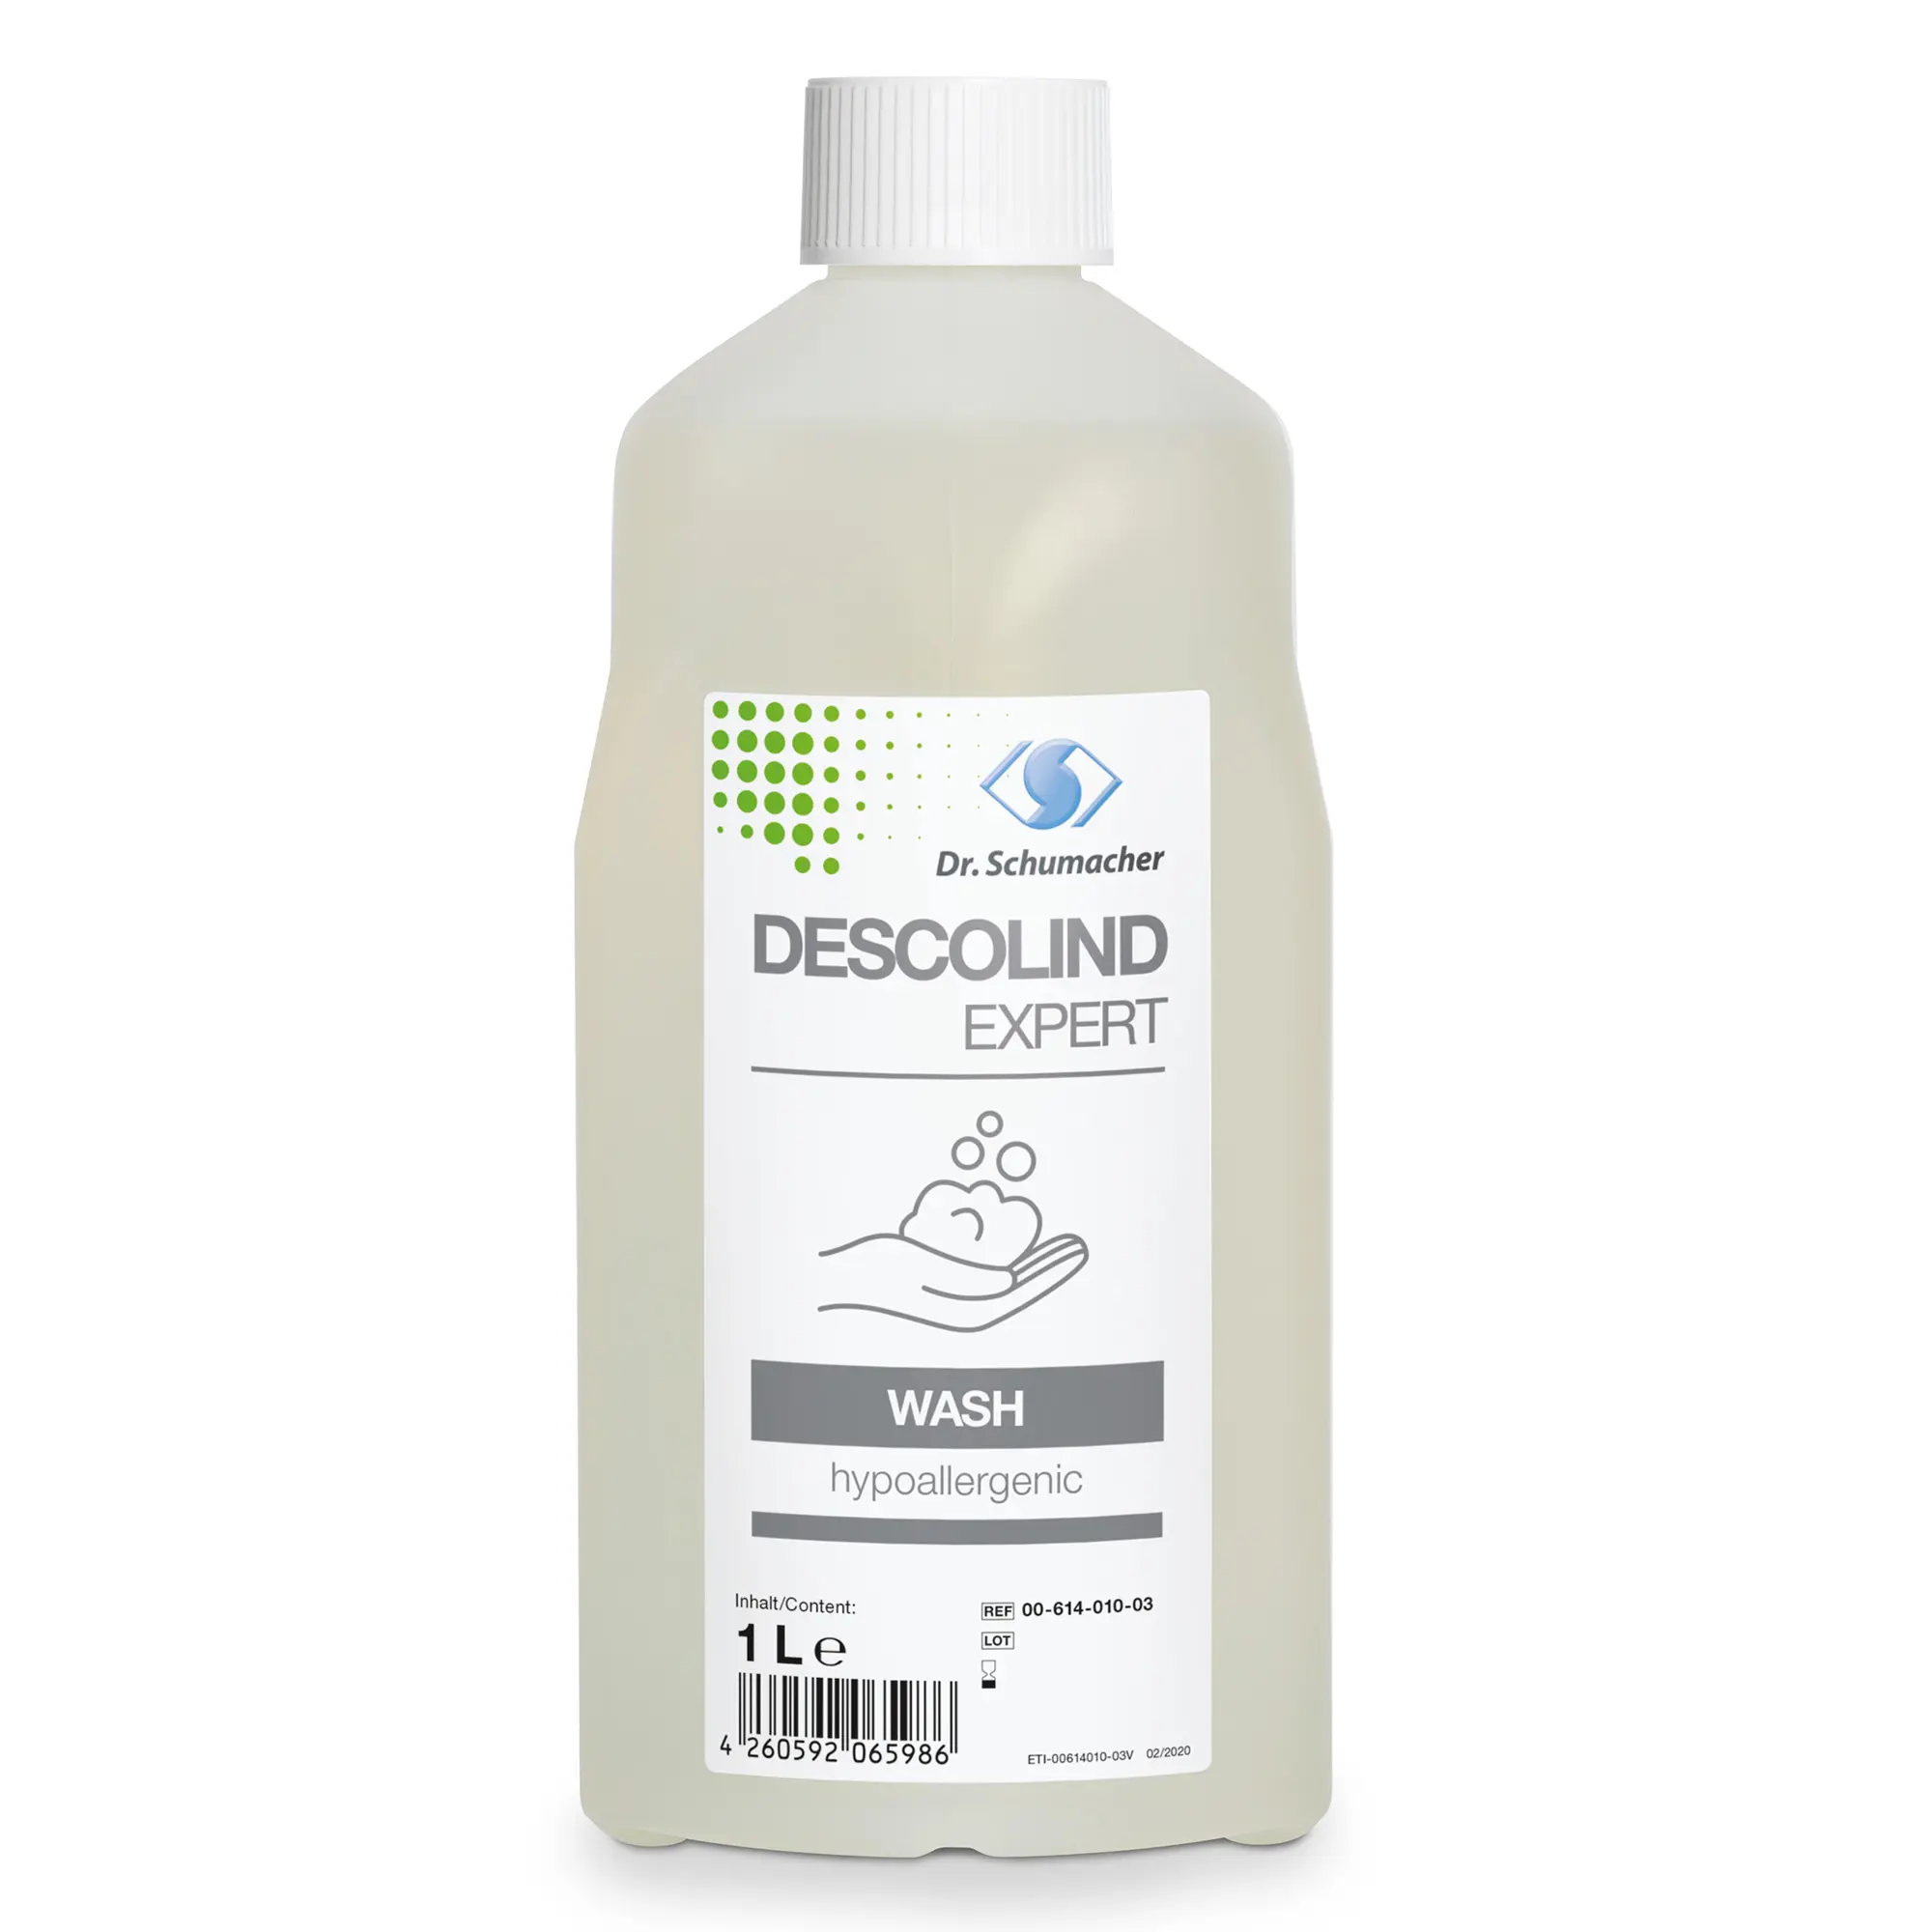 Dr. Schumacher Descolind Expert Wash Waschlotion 1 Liter 00-614-010-03_1